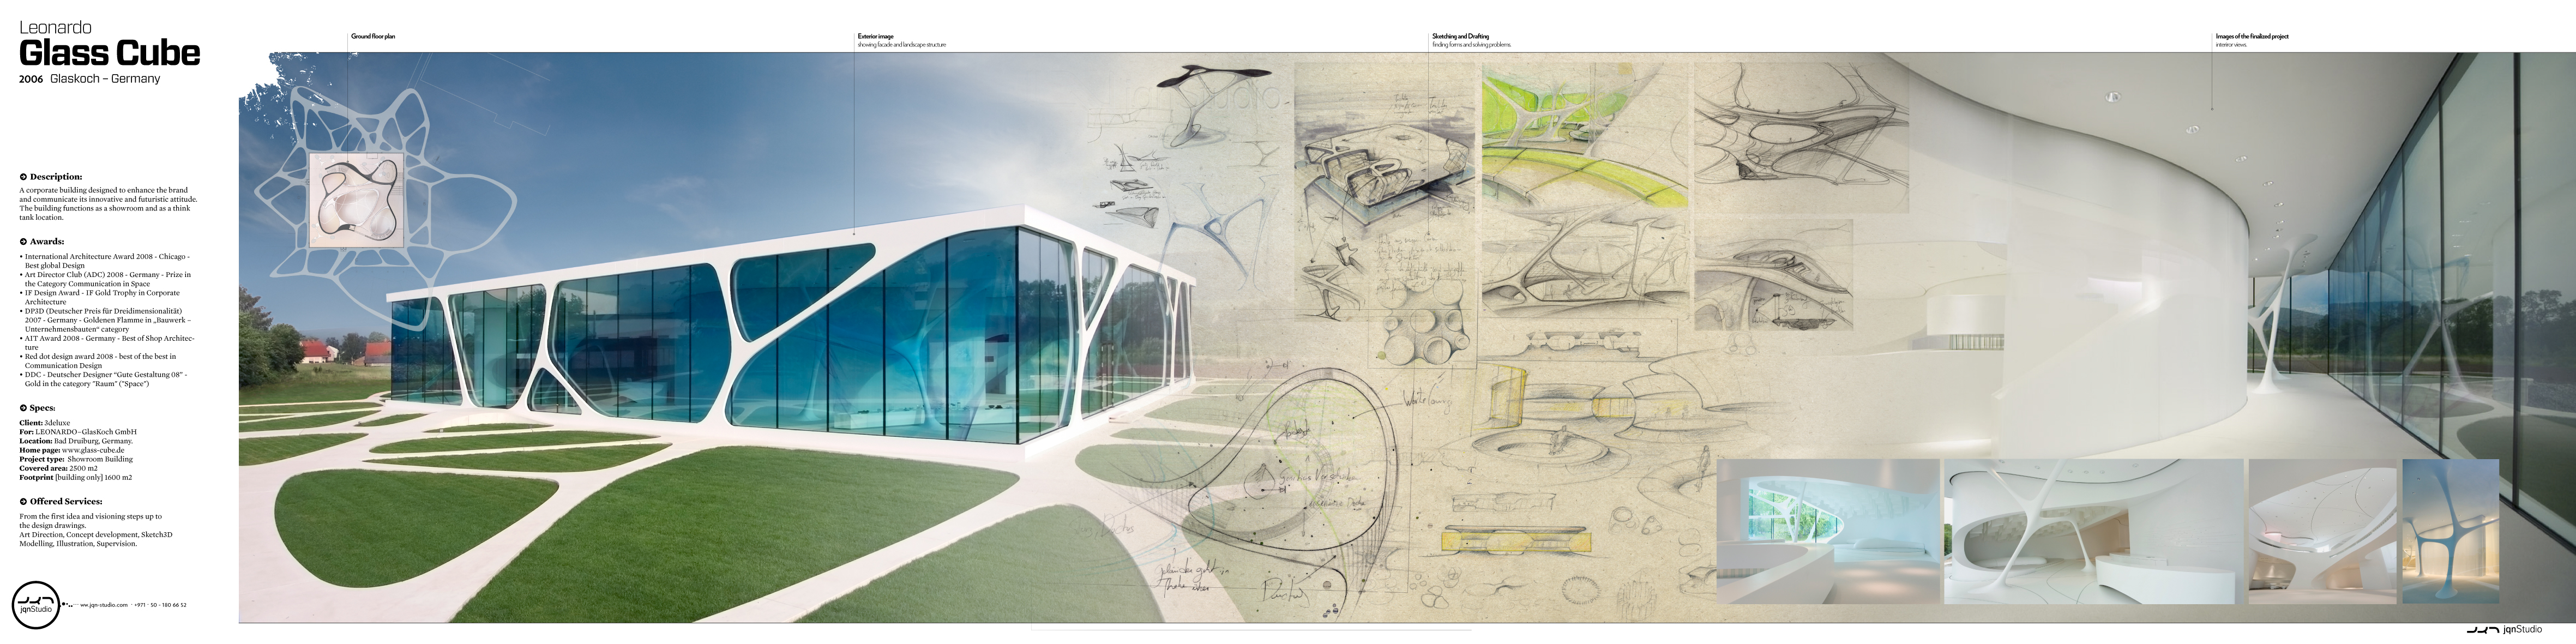 jqn Studio, Joauqin Busch, Leonardo Glass Cube, concept architecture